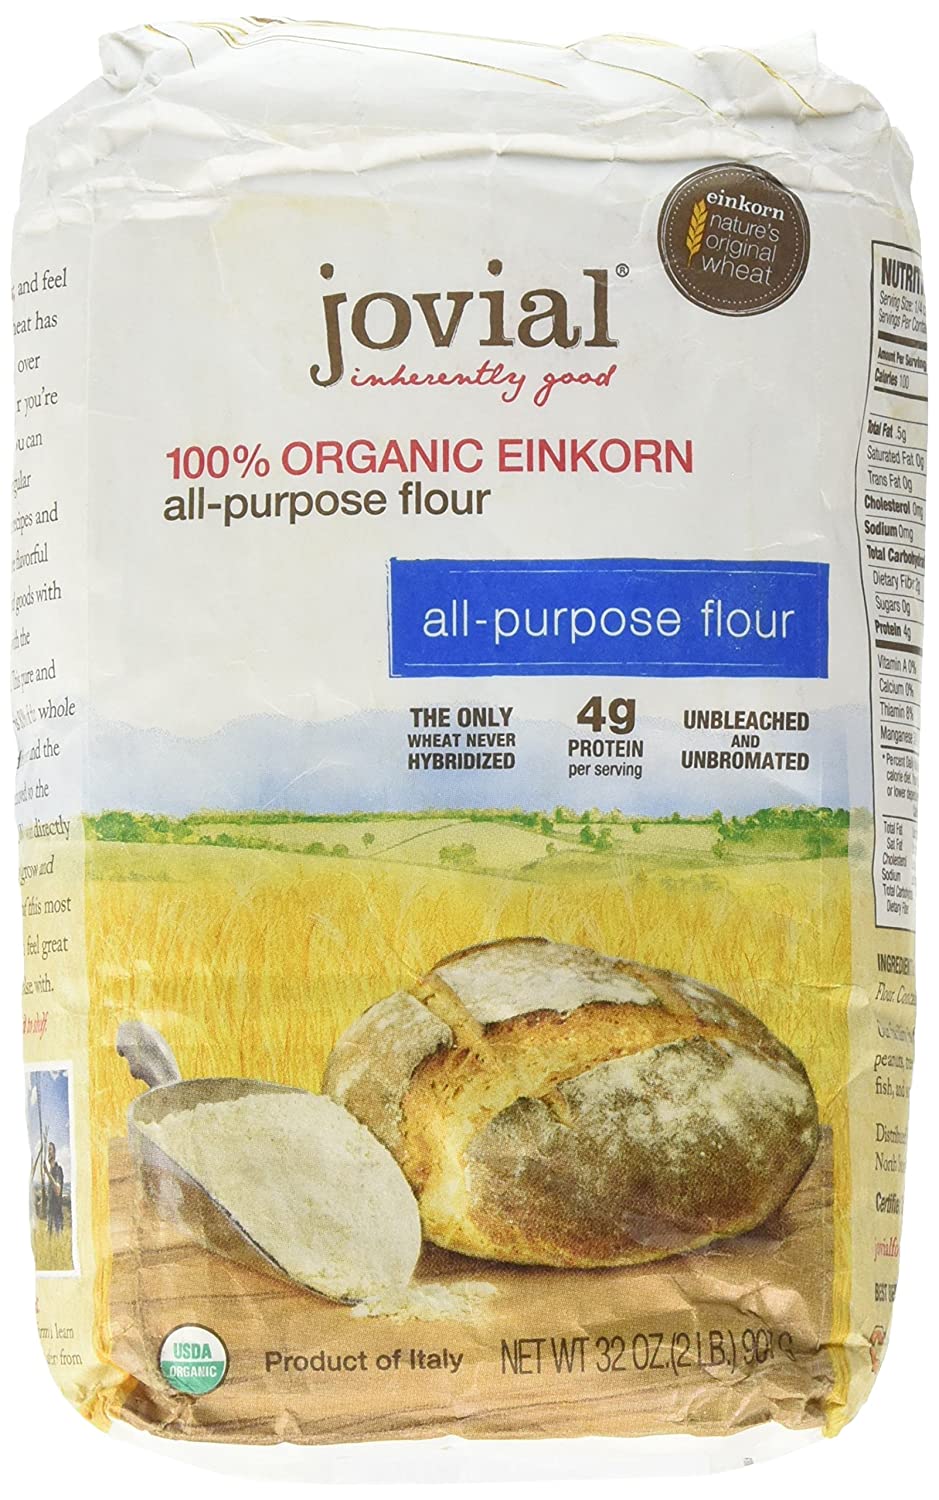 Harina para todo uso 100% einkorn como sustituto de la harina para todo uso de trigo